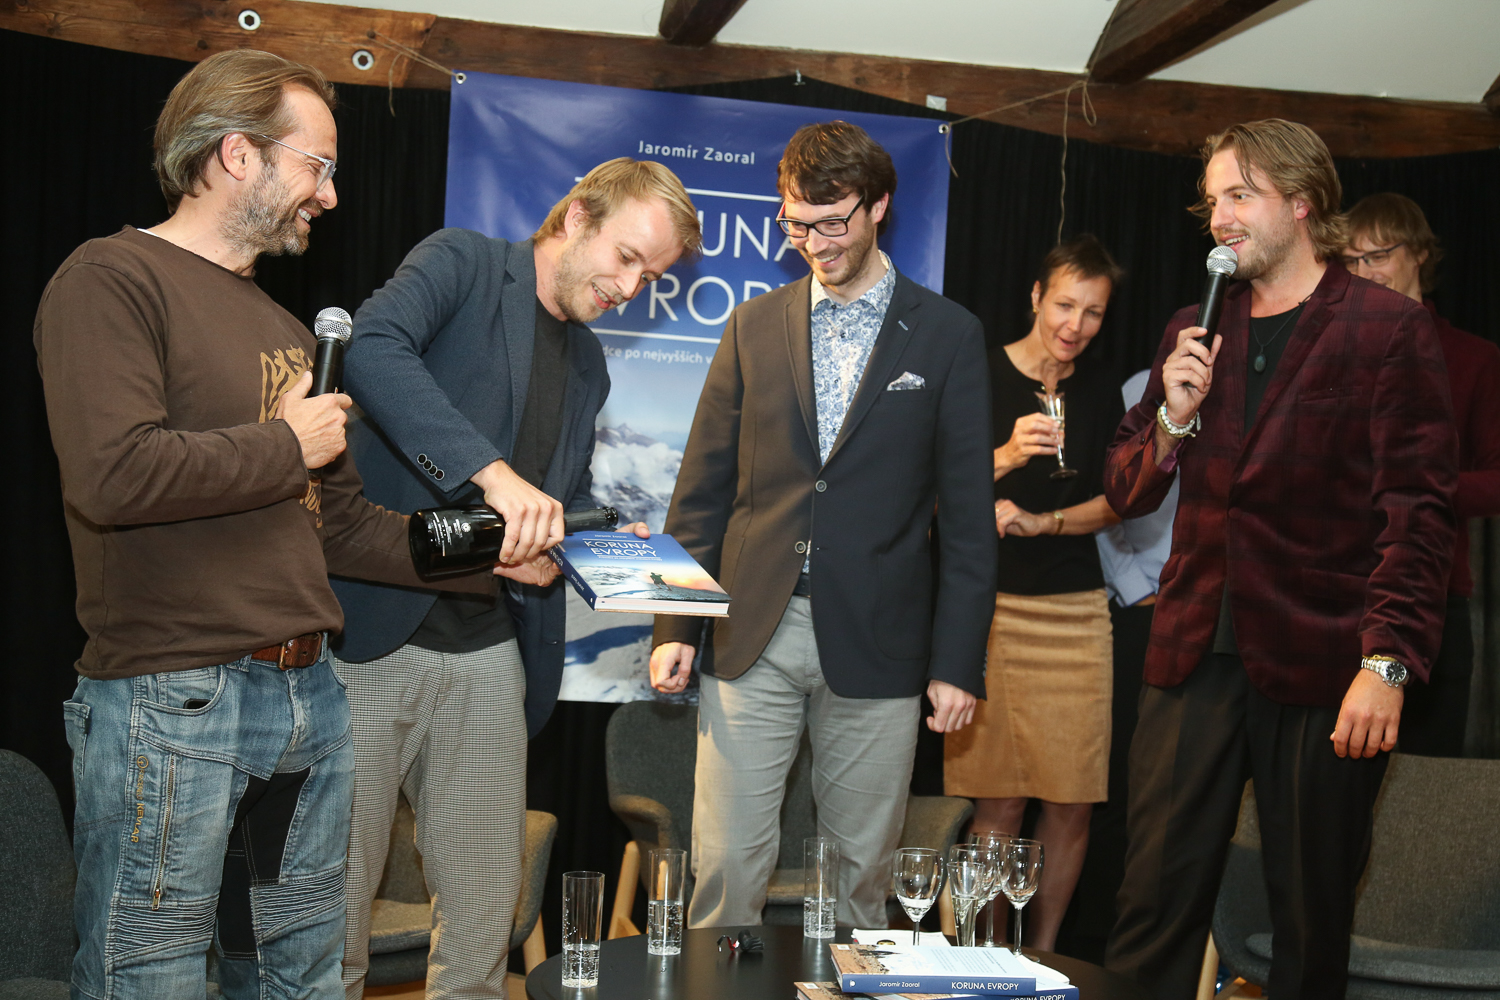 Baptism of Koruna Evropy book. From left actor Jan Révai, writer Ladislav Zibura, Jarda Zaoral and moderator Michal Kurtiš